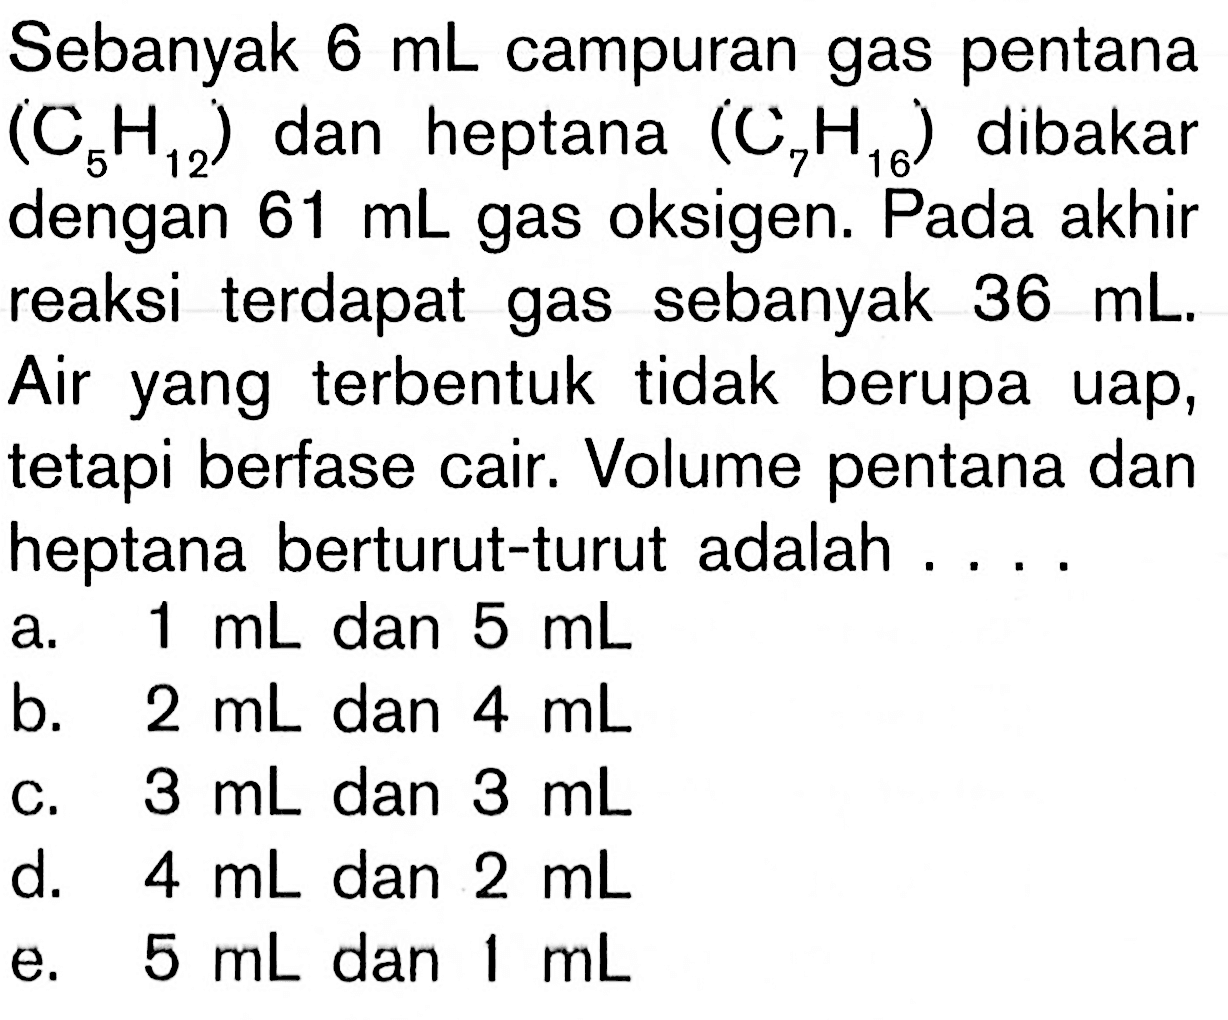 Sebanyak 6 mL campuran gas pentana (C5H12) dan heptana (C7H16) dibakar dengan 61 mL gas oksigen. Pada akhir reaksi terdapat gas sebanyak 36 mL. Air yang terbentuk tidak berupa uap, tetapi berfase cair. Volume pentana dan heptana berturut-turut adalah ...